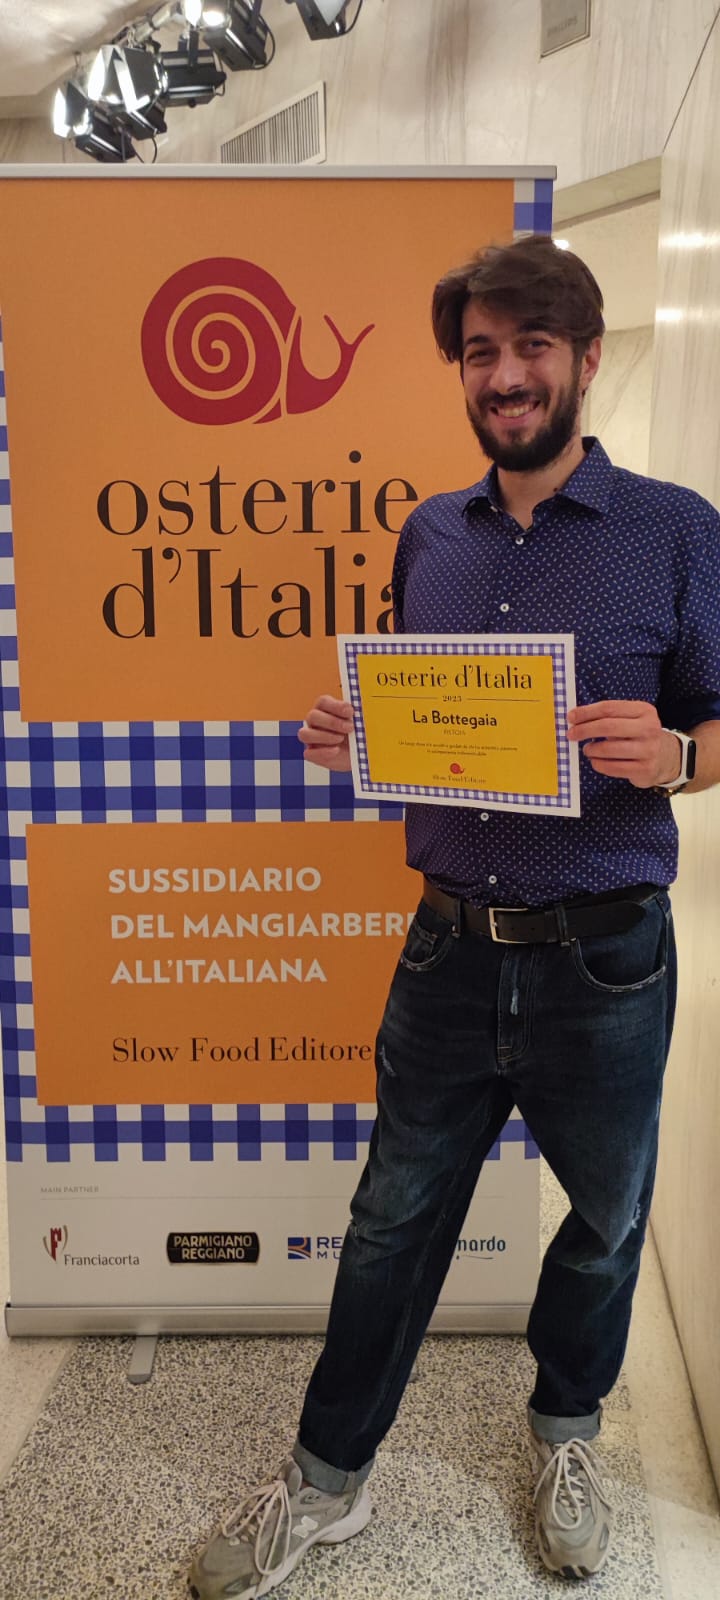 "La BotteGaia di Pistoia fra le migliori osterie d’Italia"